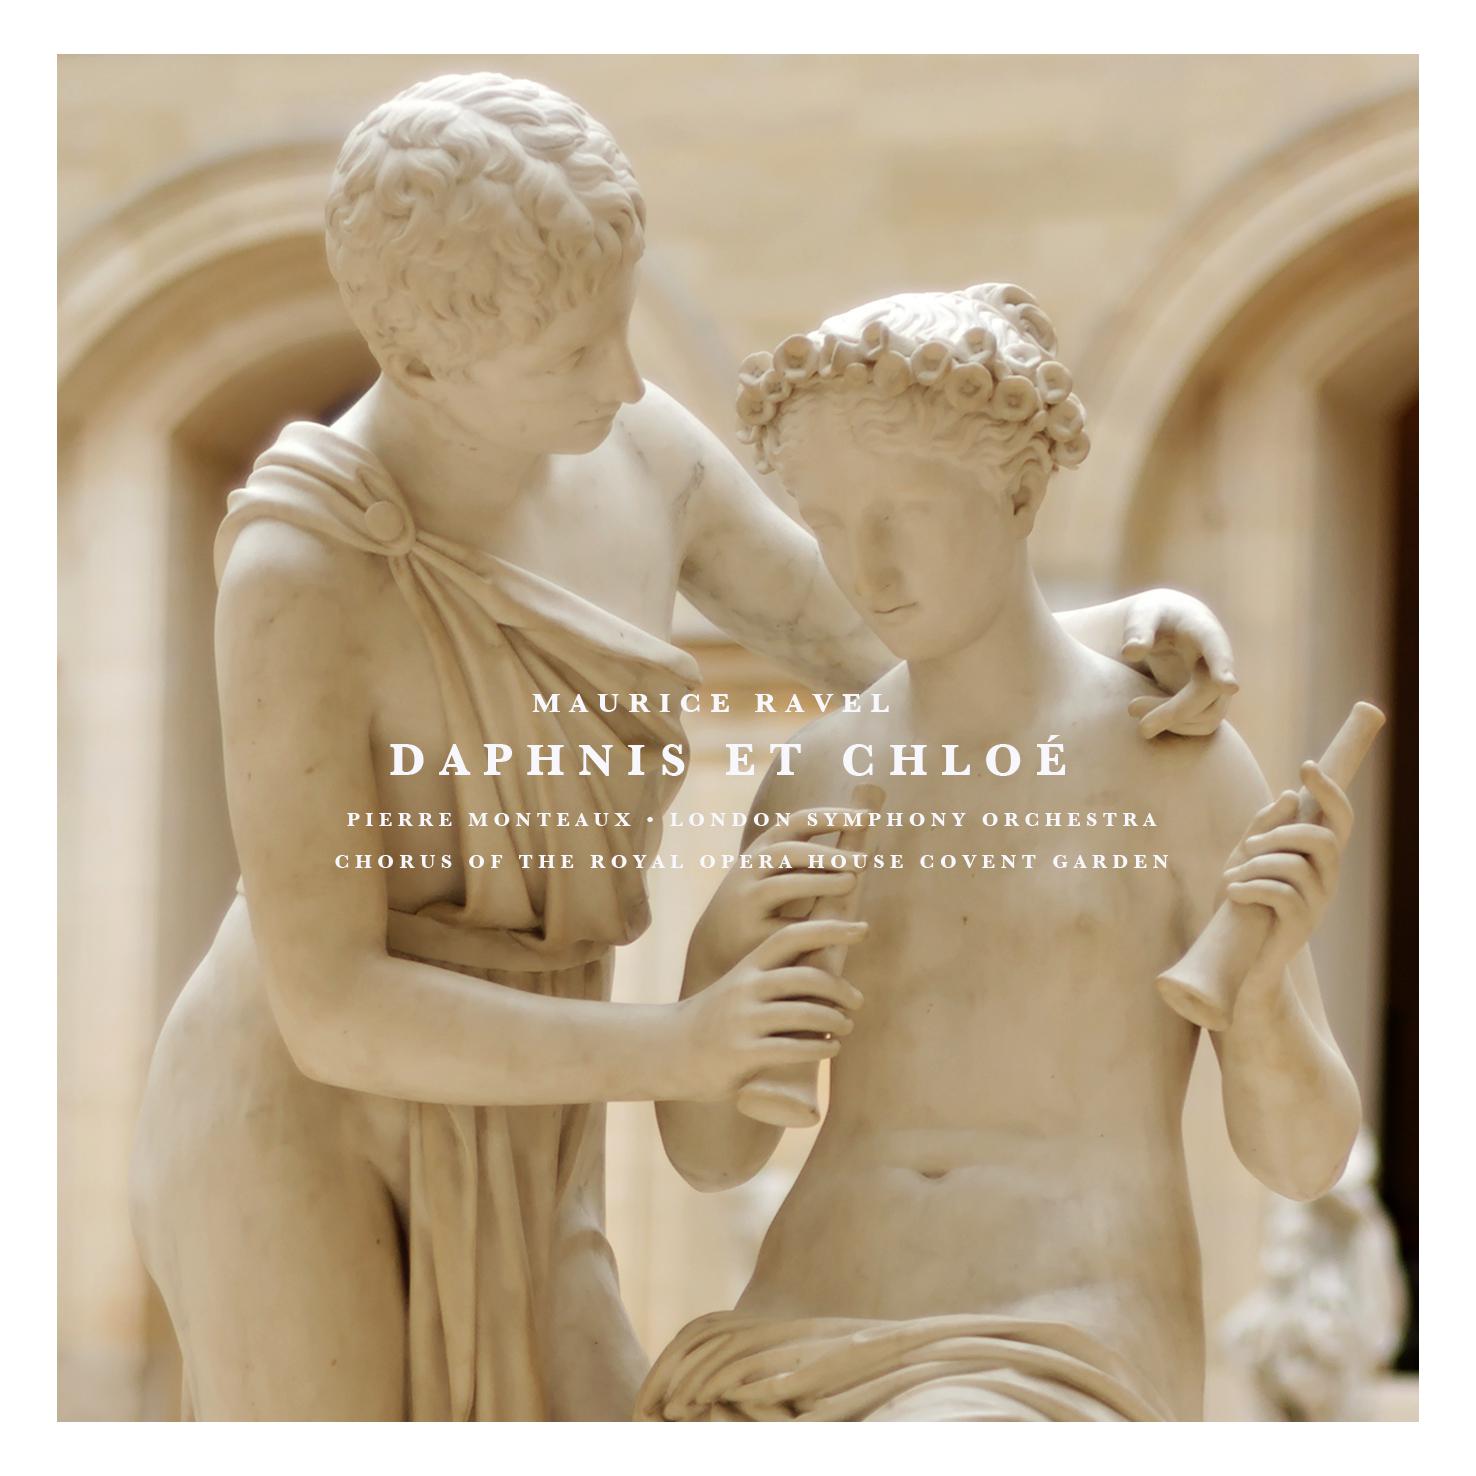 Daphnis Et Chloé: Part II "Danse suppliante de Chloé"